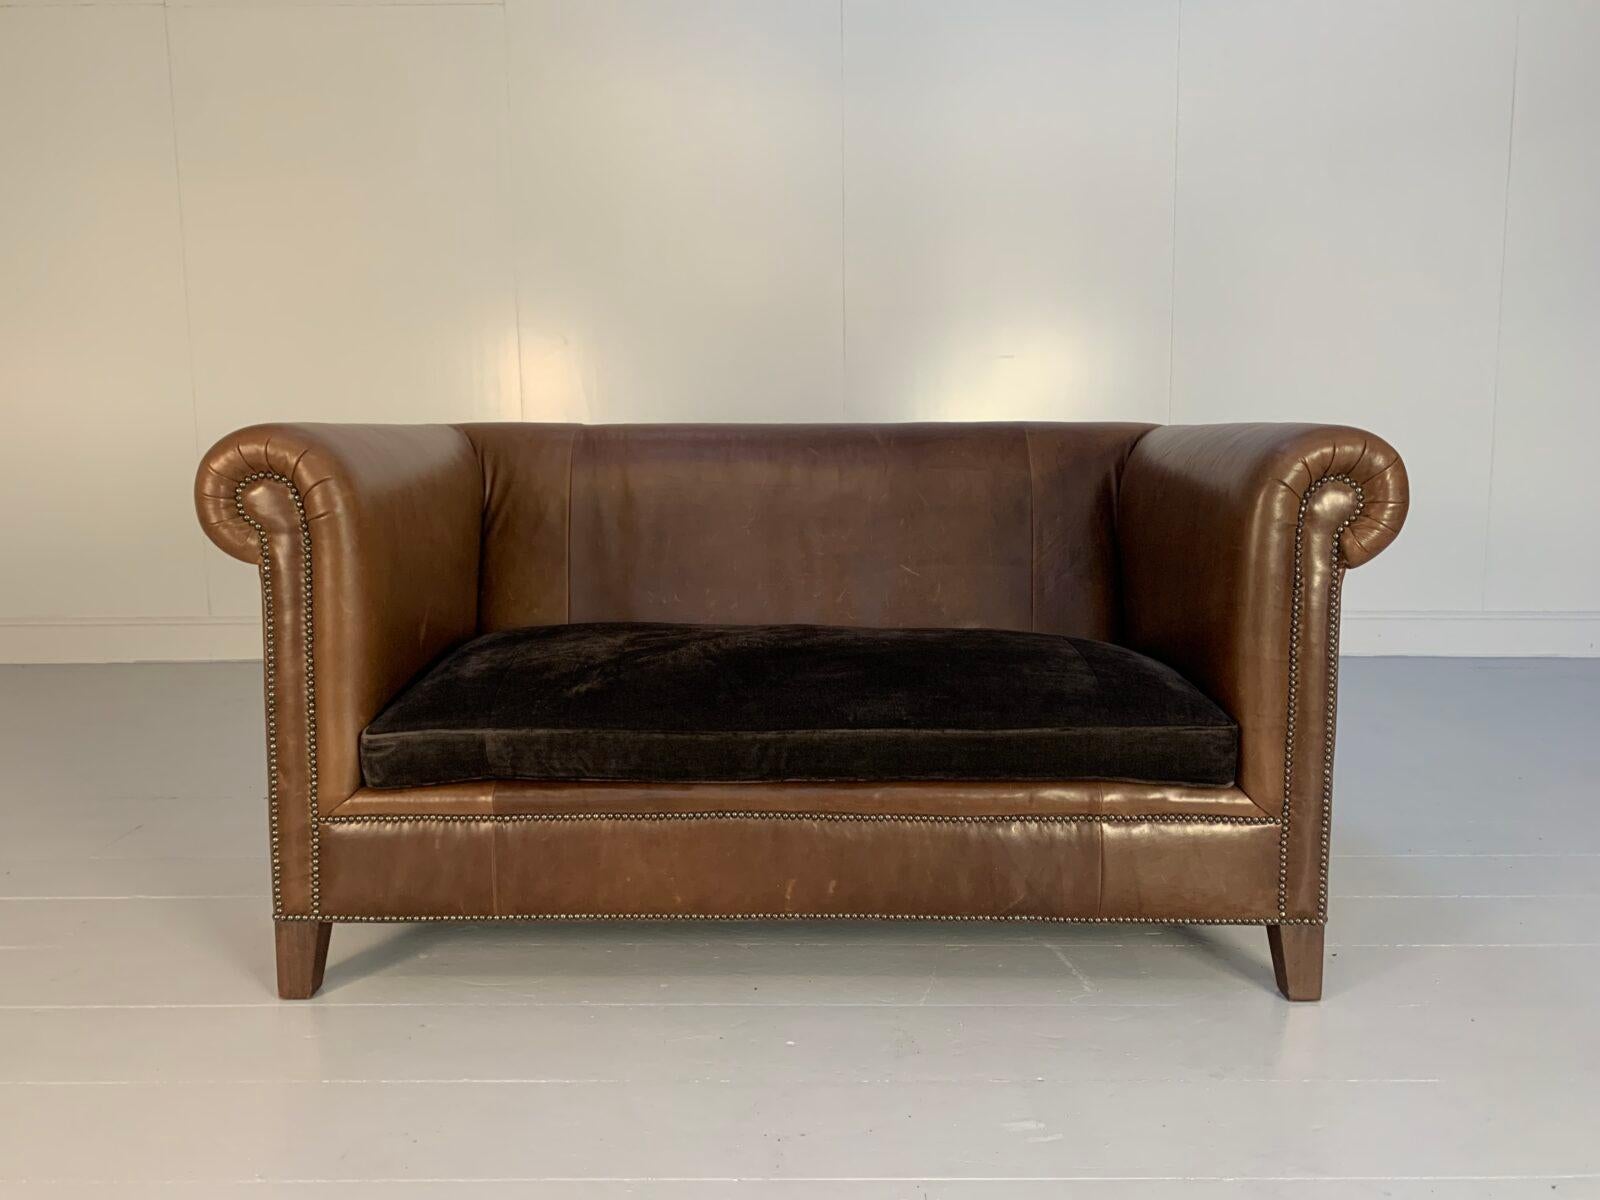 Bei dieser Gelegenheit bietet sich die seltene Gelegenheit, ein hervorragendes, hübsches Ralph Lauren Chesterfield-Sofa mit 2,5 Sitzplätzen zu erwerben, das mit einem sensationell raffinierten, eleganten und luxuriösen, leicht gealterten,